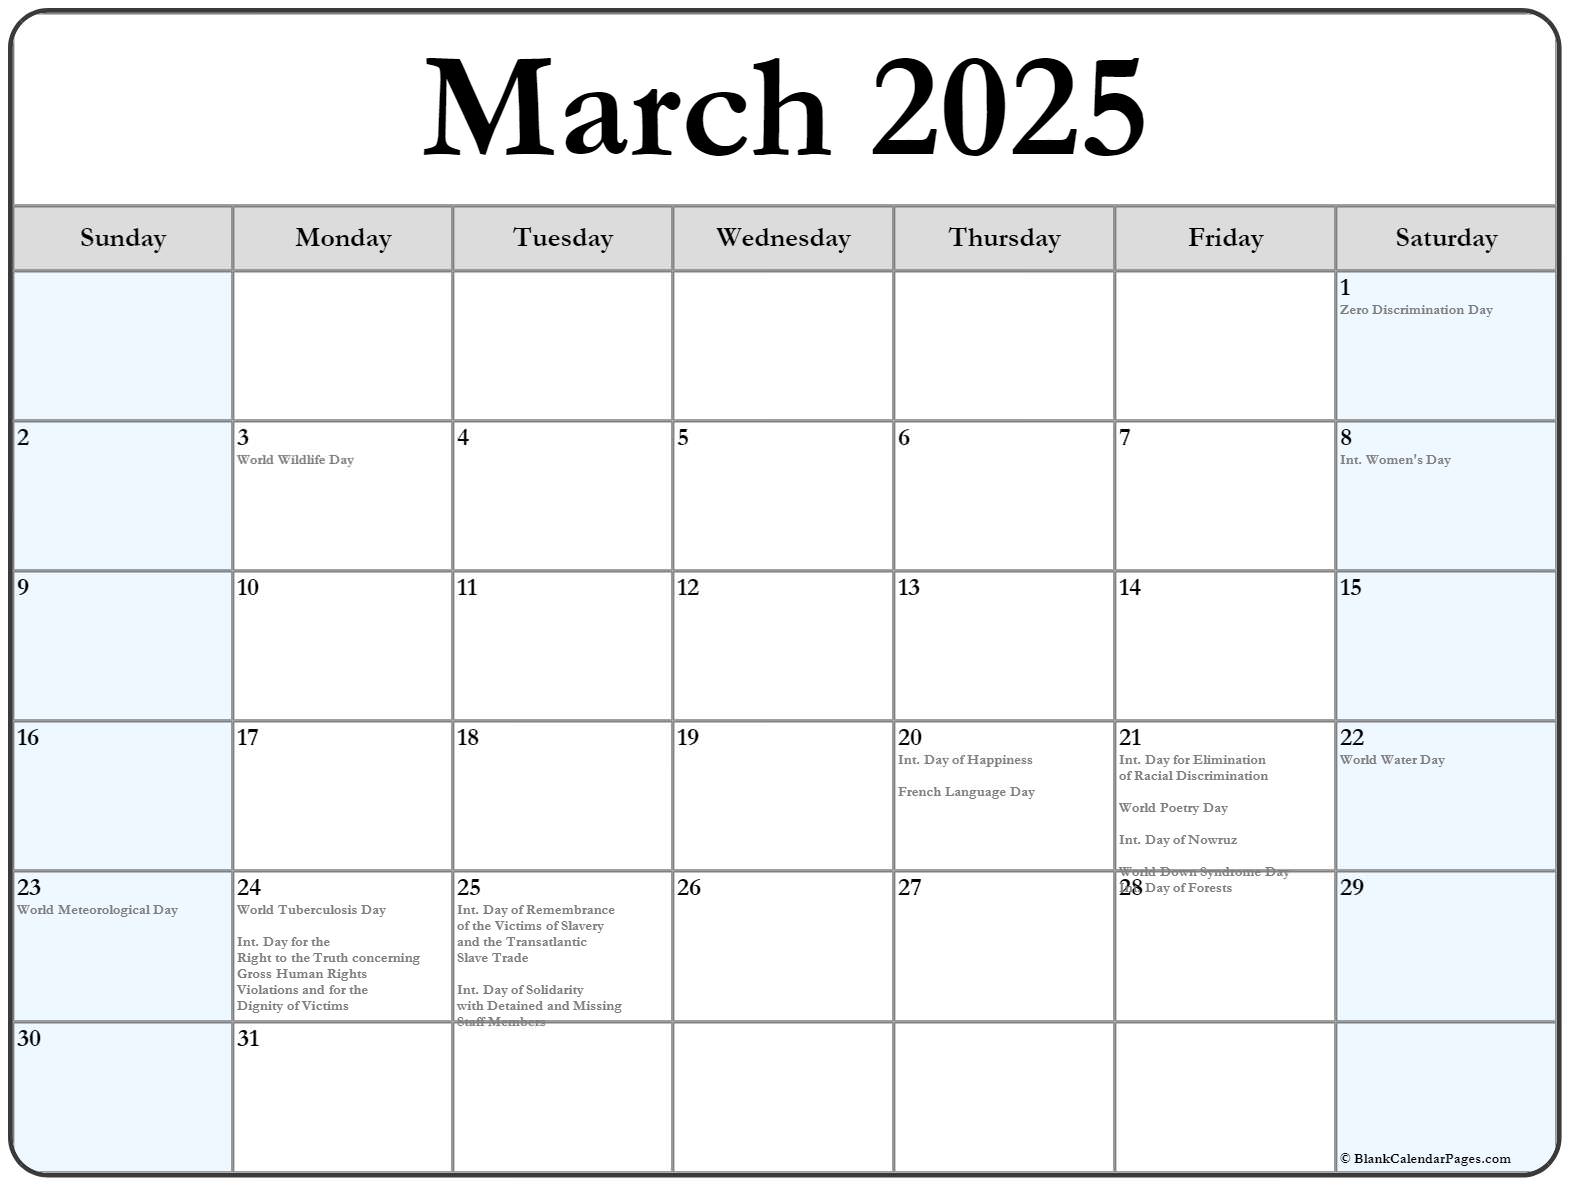 Calendar Of March 2025 With Holidays - emmy caroljean